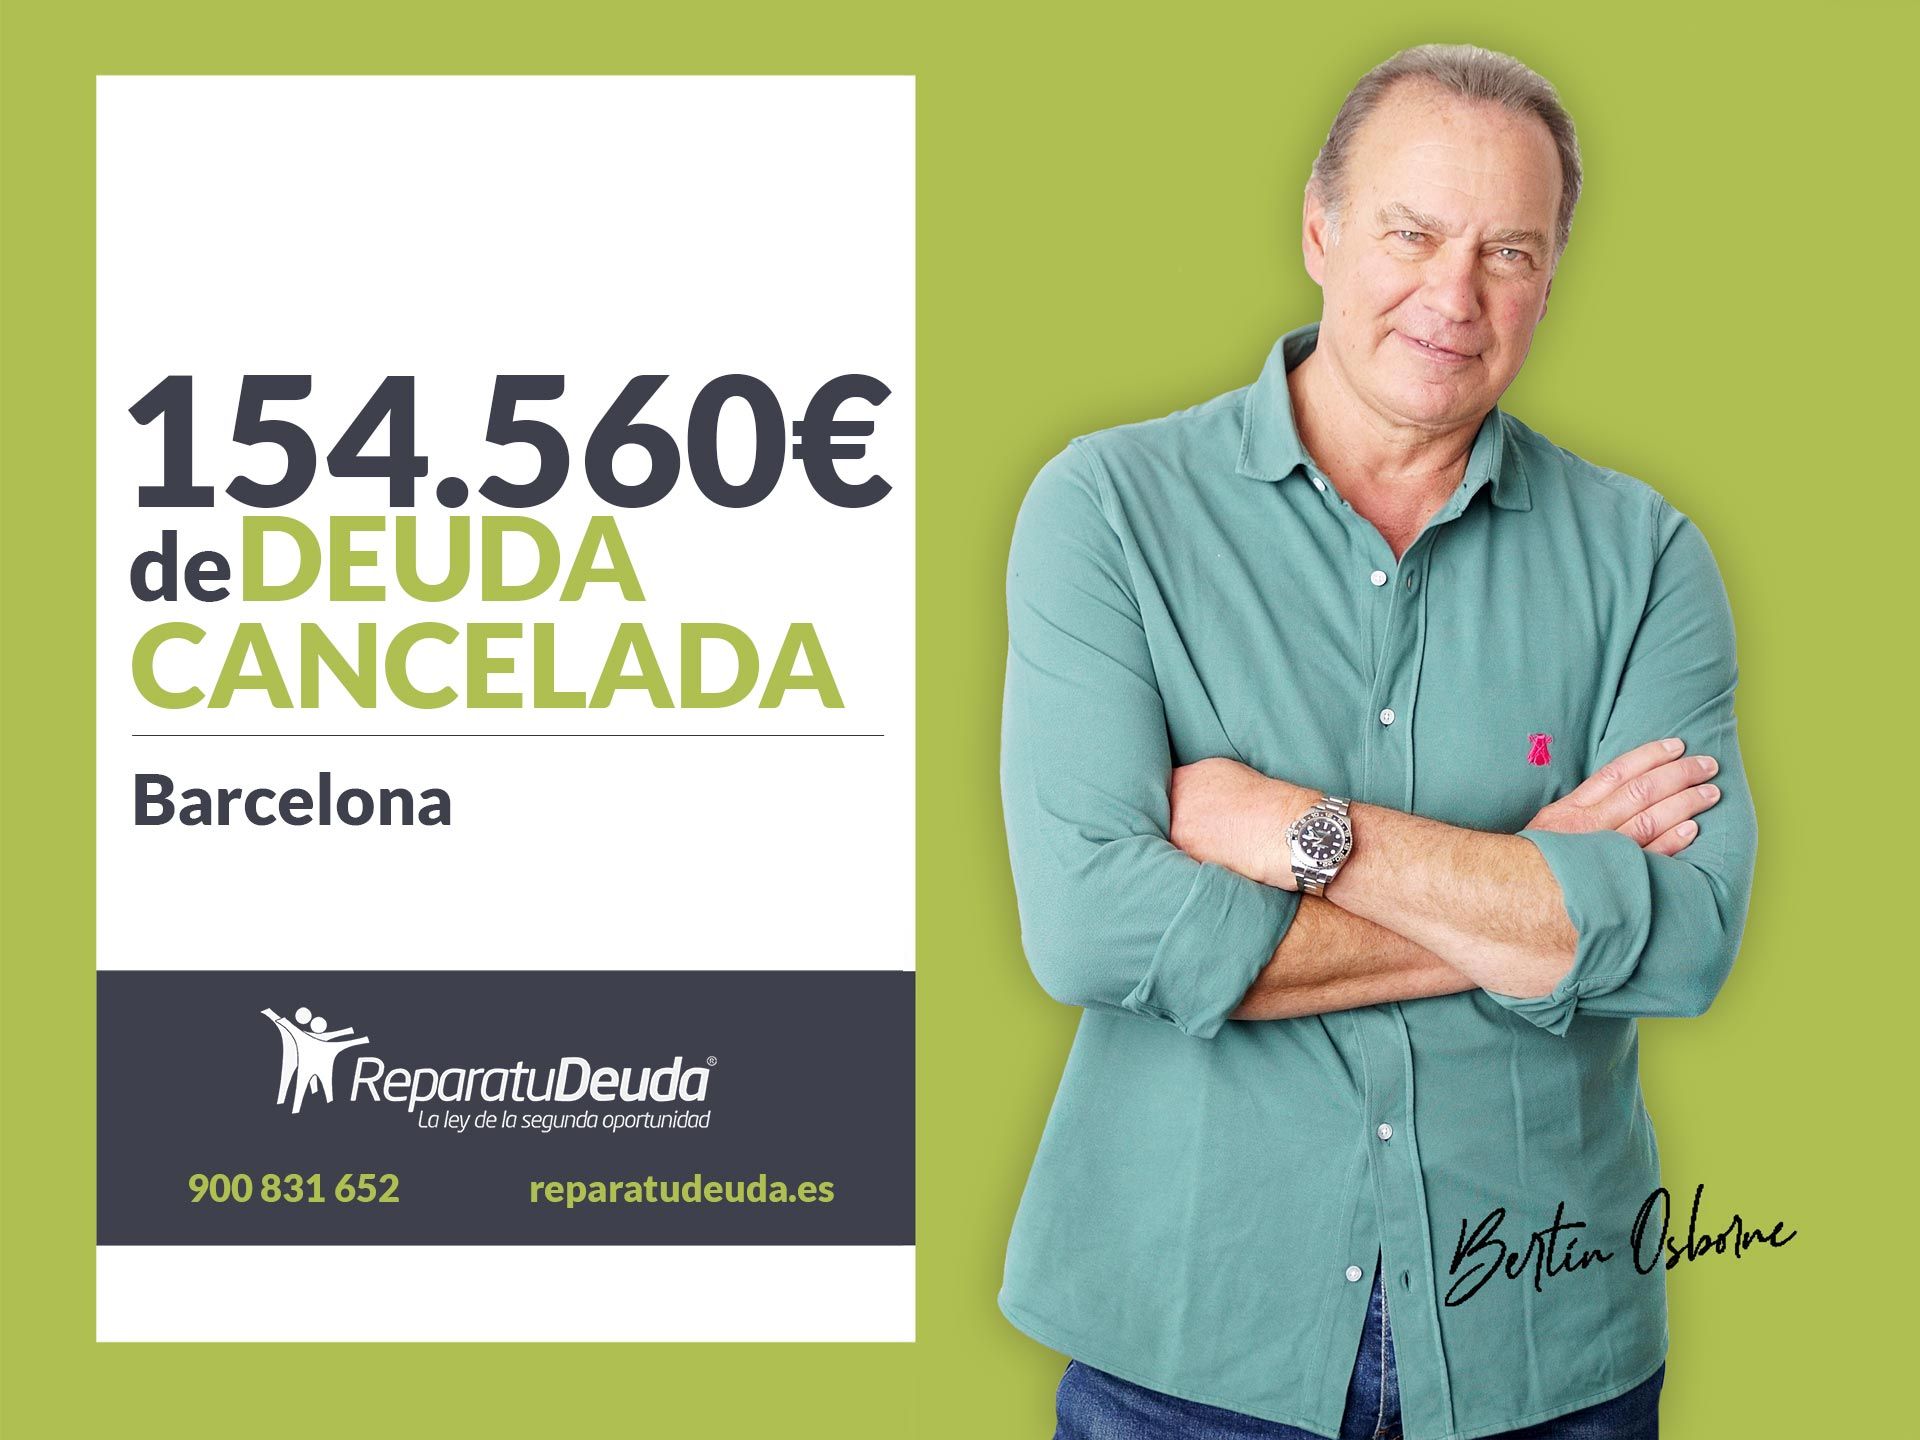 Repara tu Deuda Abogados cancela 154.560? en Barcelona (Catalunya) con la Ley de la Segunda Oportunidad